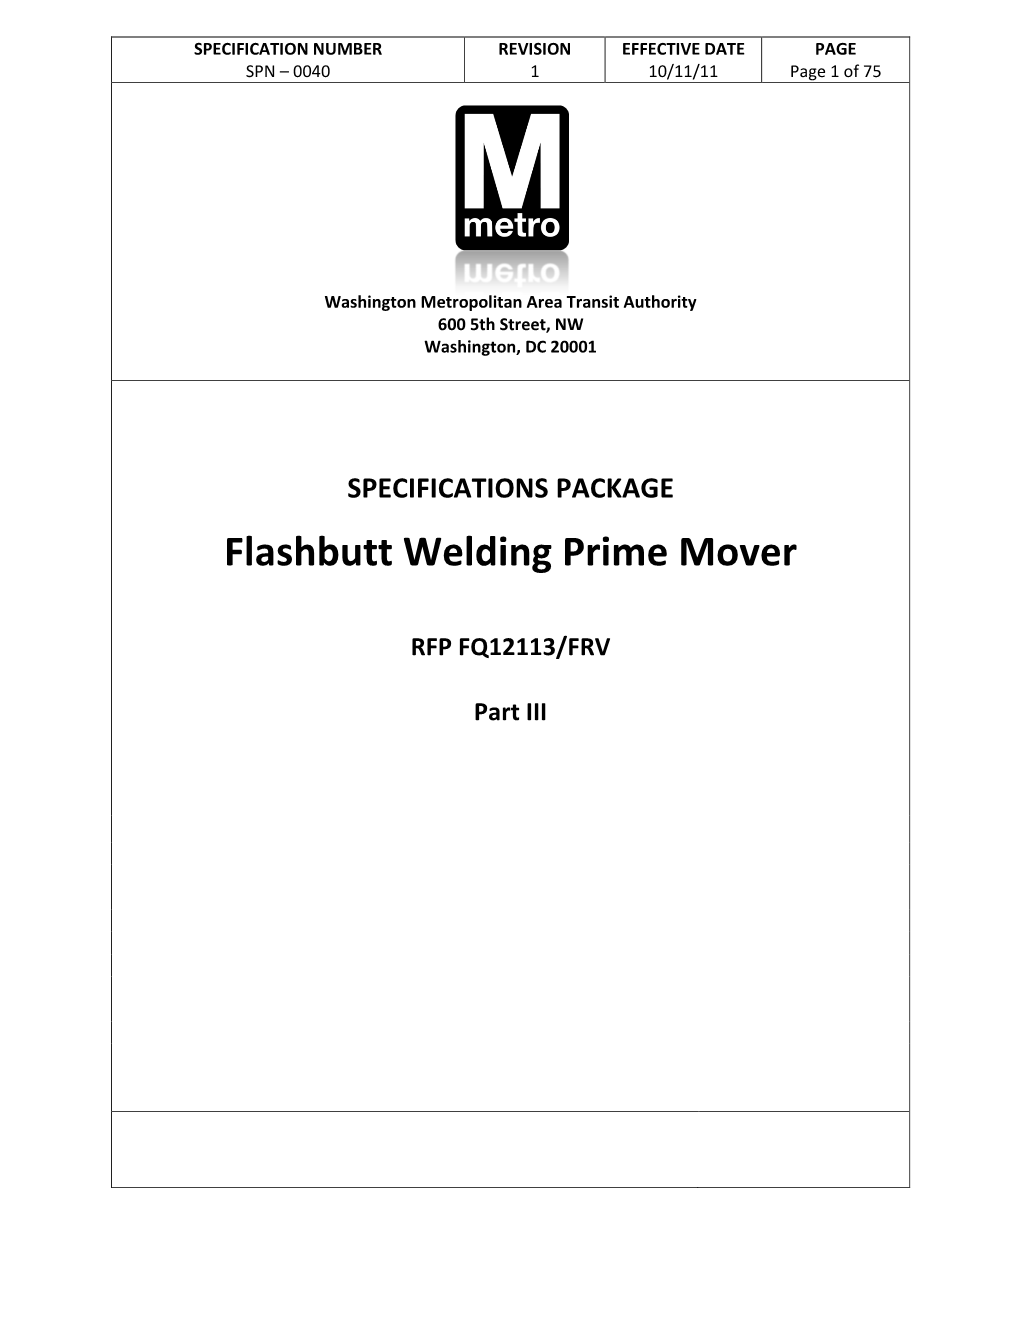 Flashbutt Welding Prime Mover